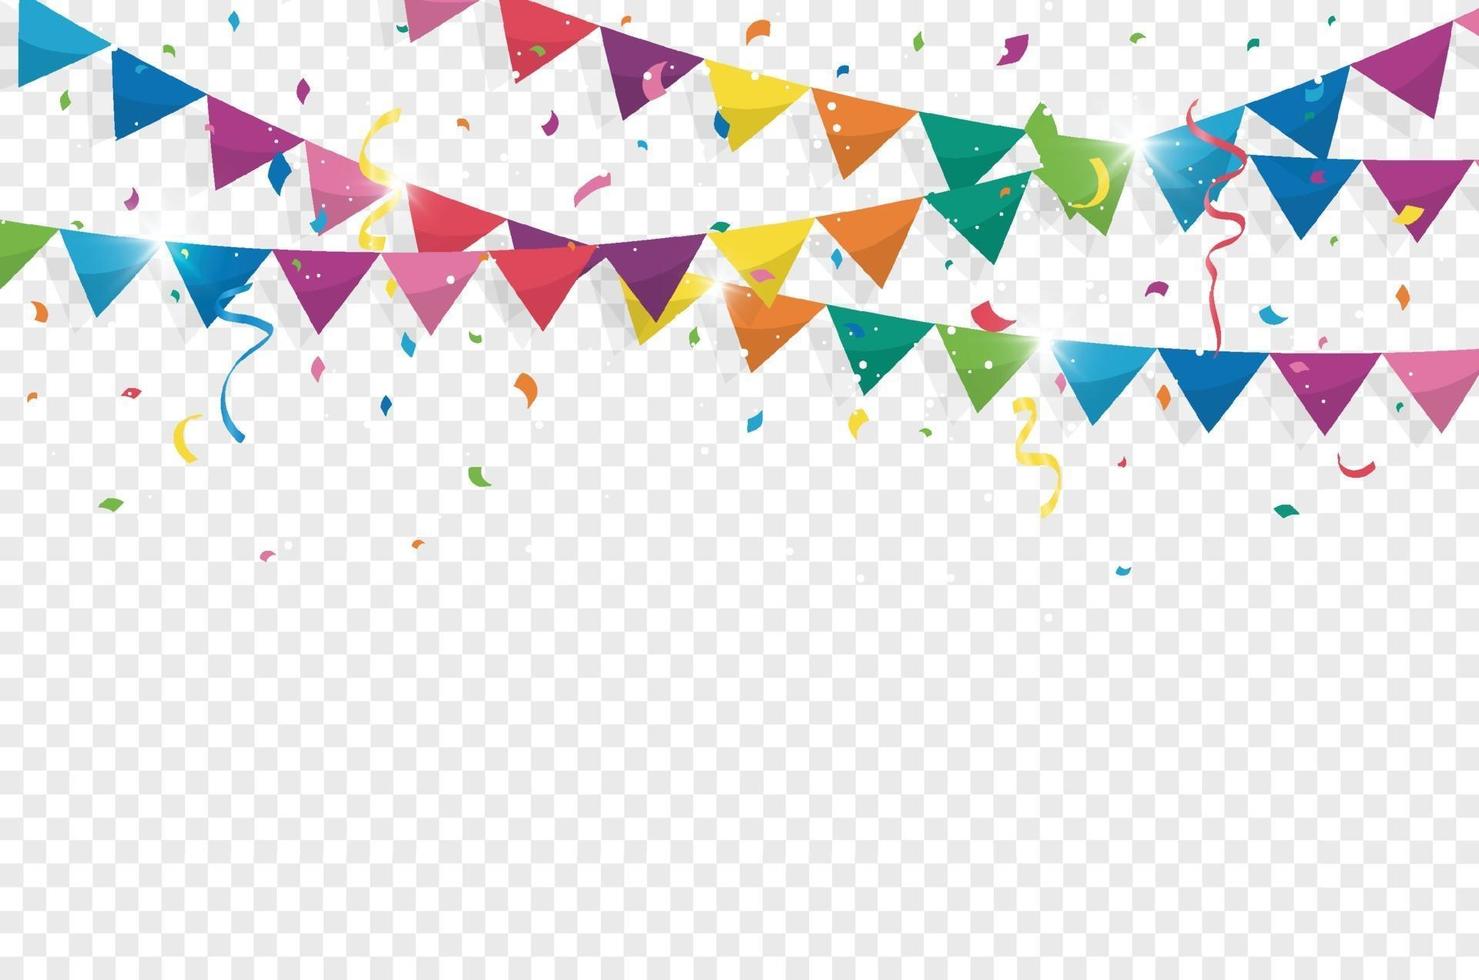 bandierine colorate con coriandoli e nastri per festa di compleanno, celebrazione, carnevale, anniversario e festa su priorità bassa bianca. illustrazione vettoriale